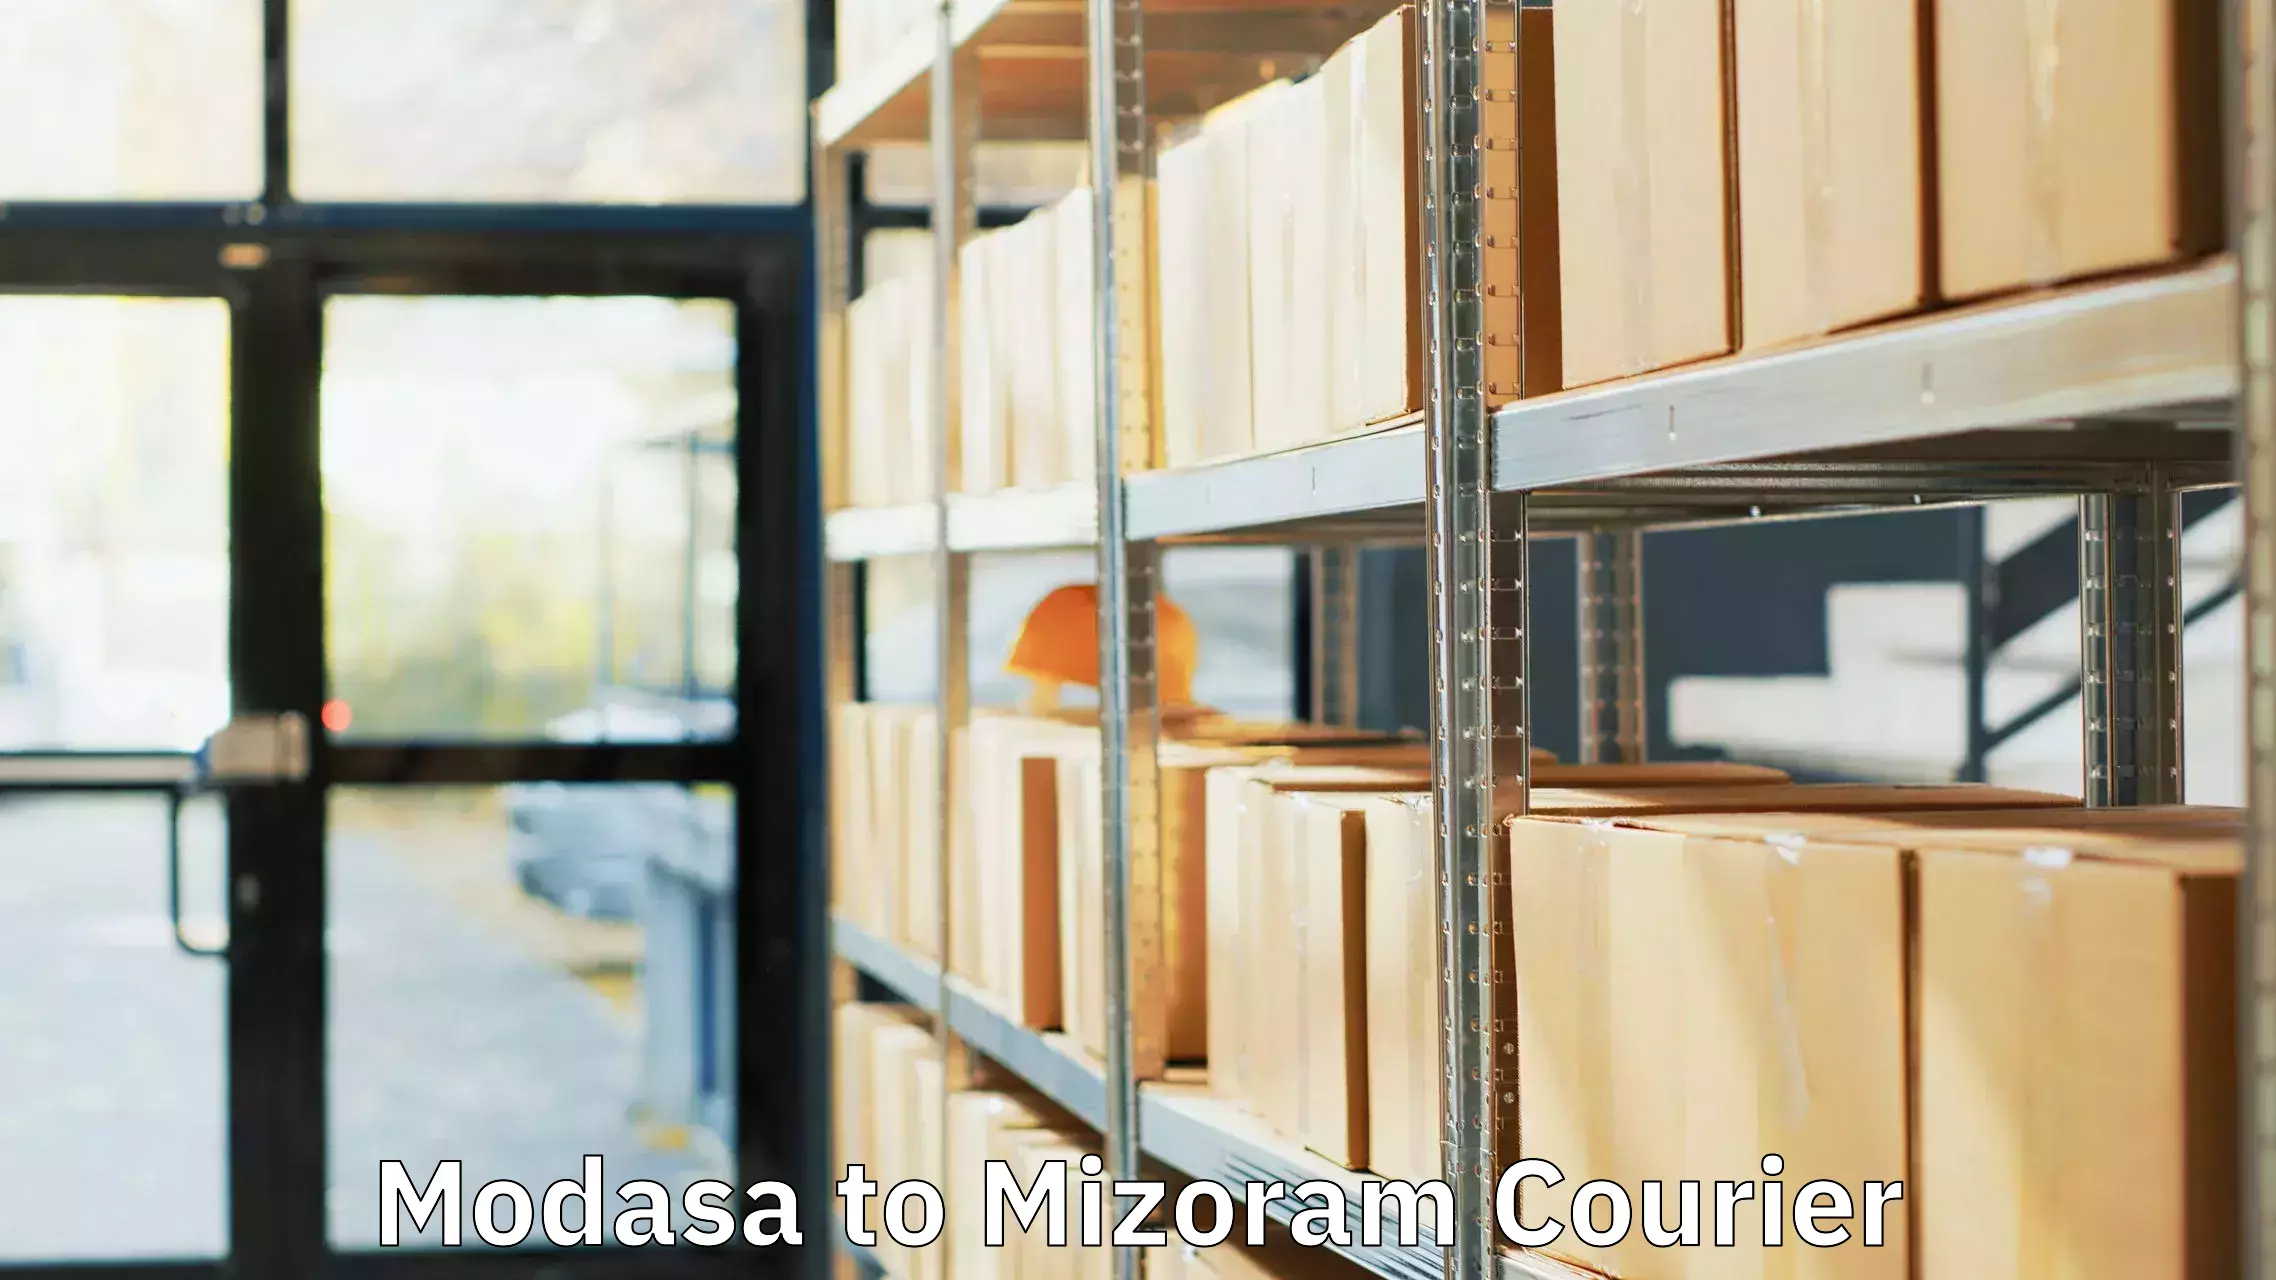 Luggage transit service Modasa to Mizoram